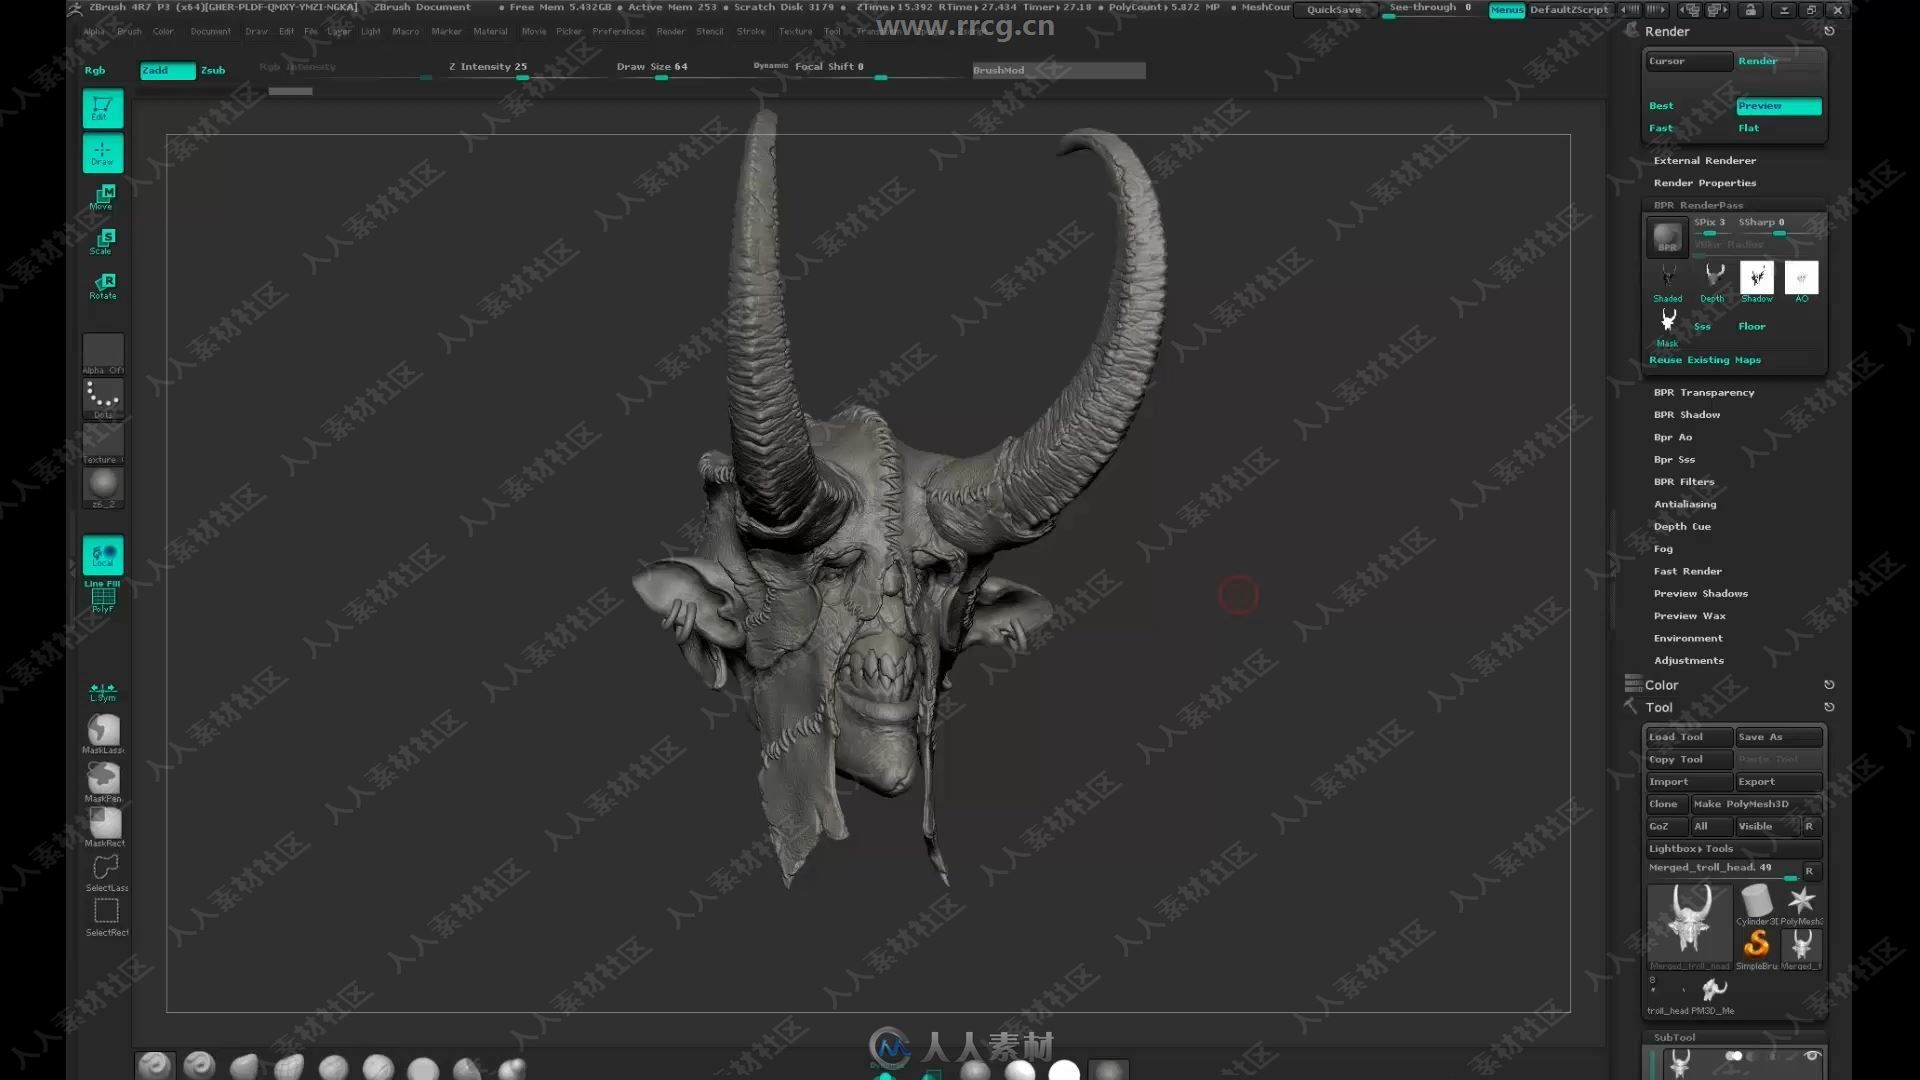 ZBrus巨魔兽人怪兽游戏角色雕刻制作视频教程